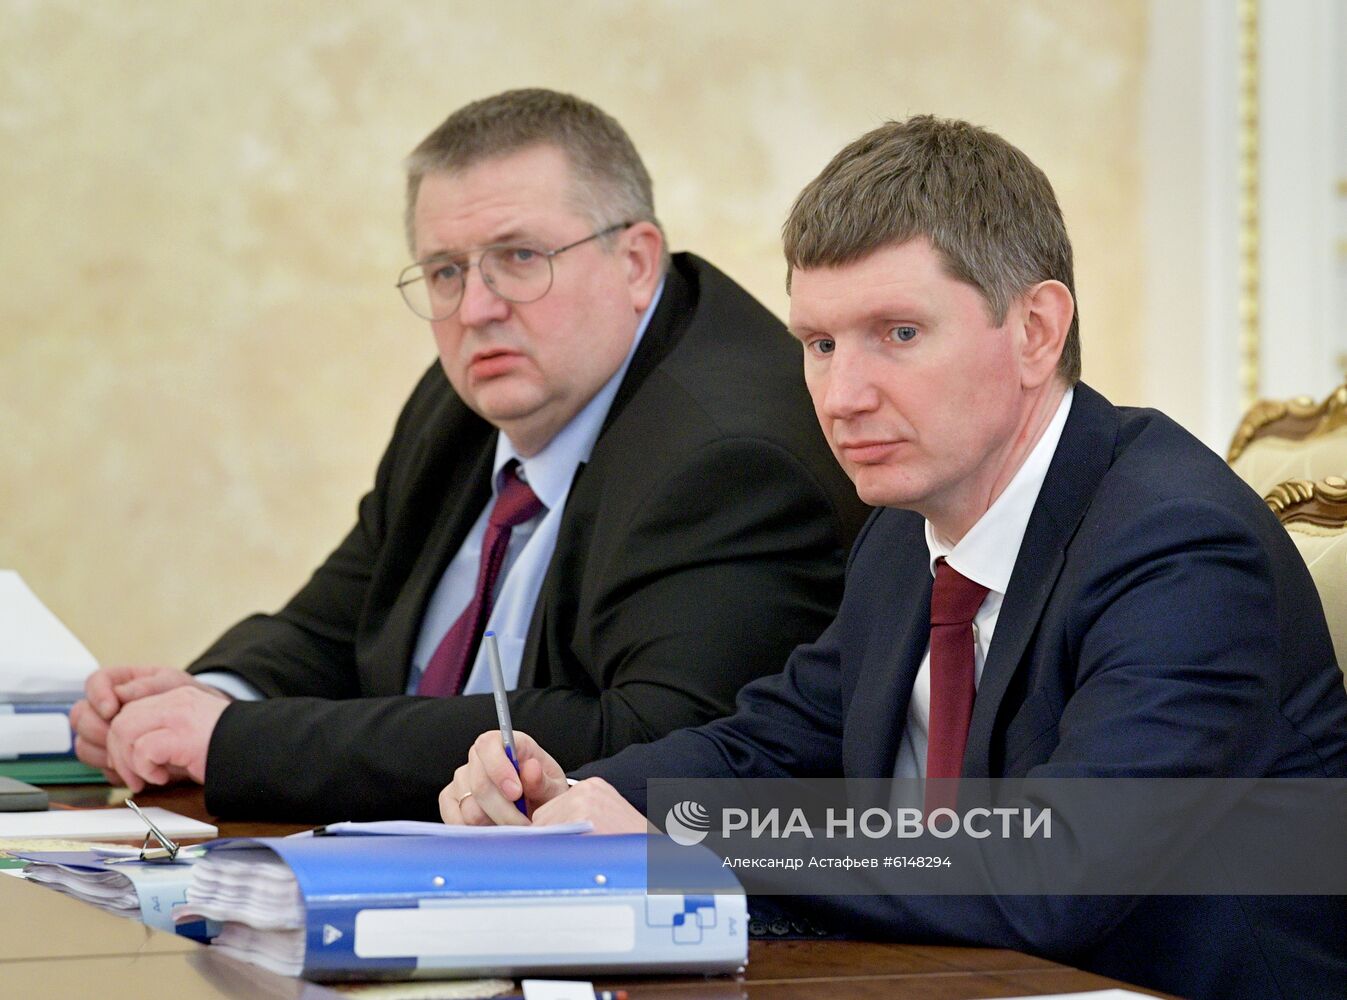 Премьер-министр РФ М. Мишустин провел совещание о приоритетных задачах в рамках евразийской экономической интеграции